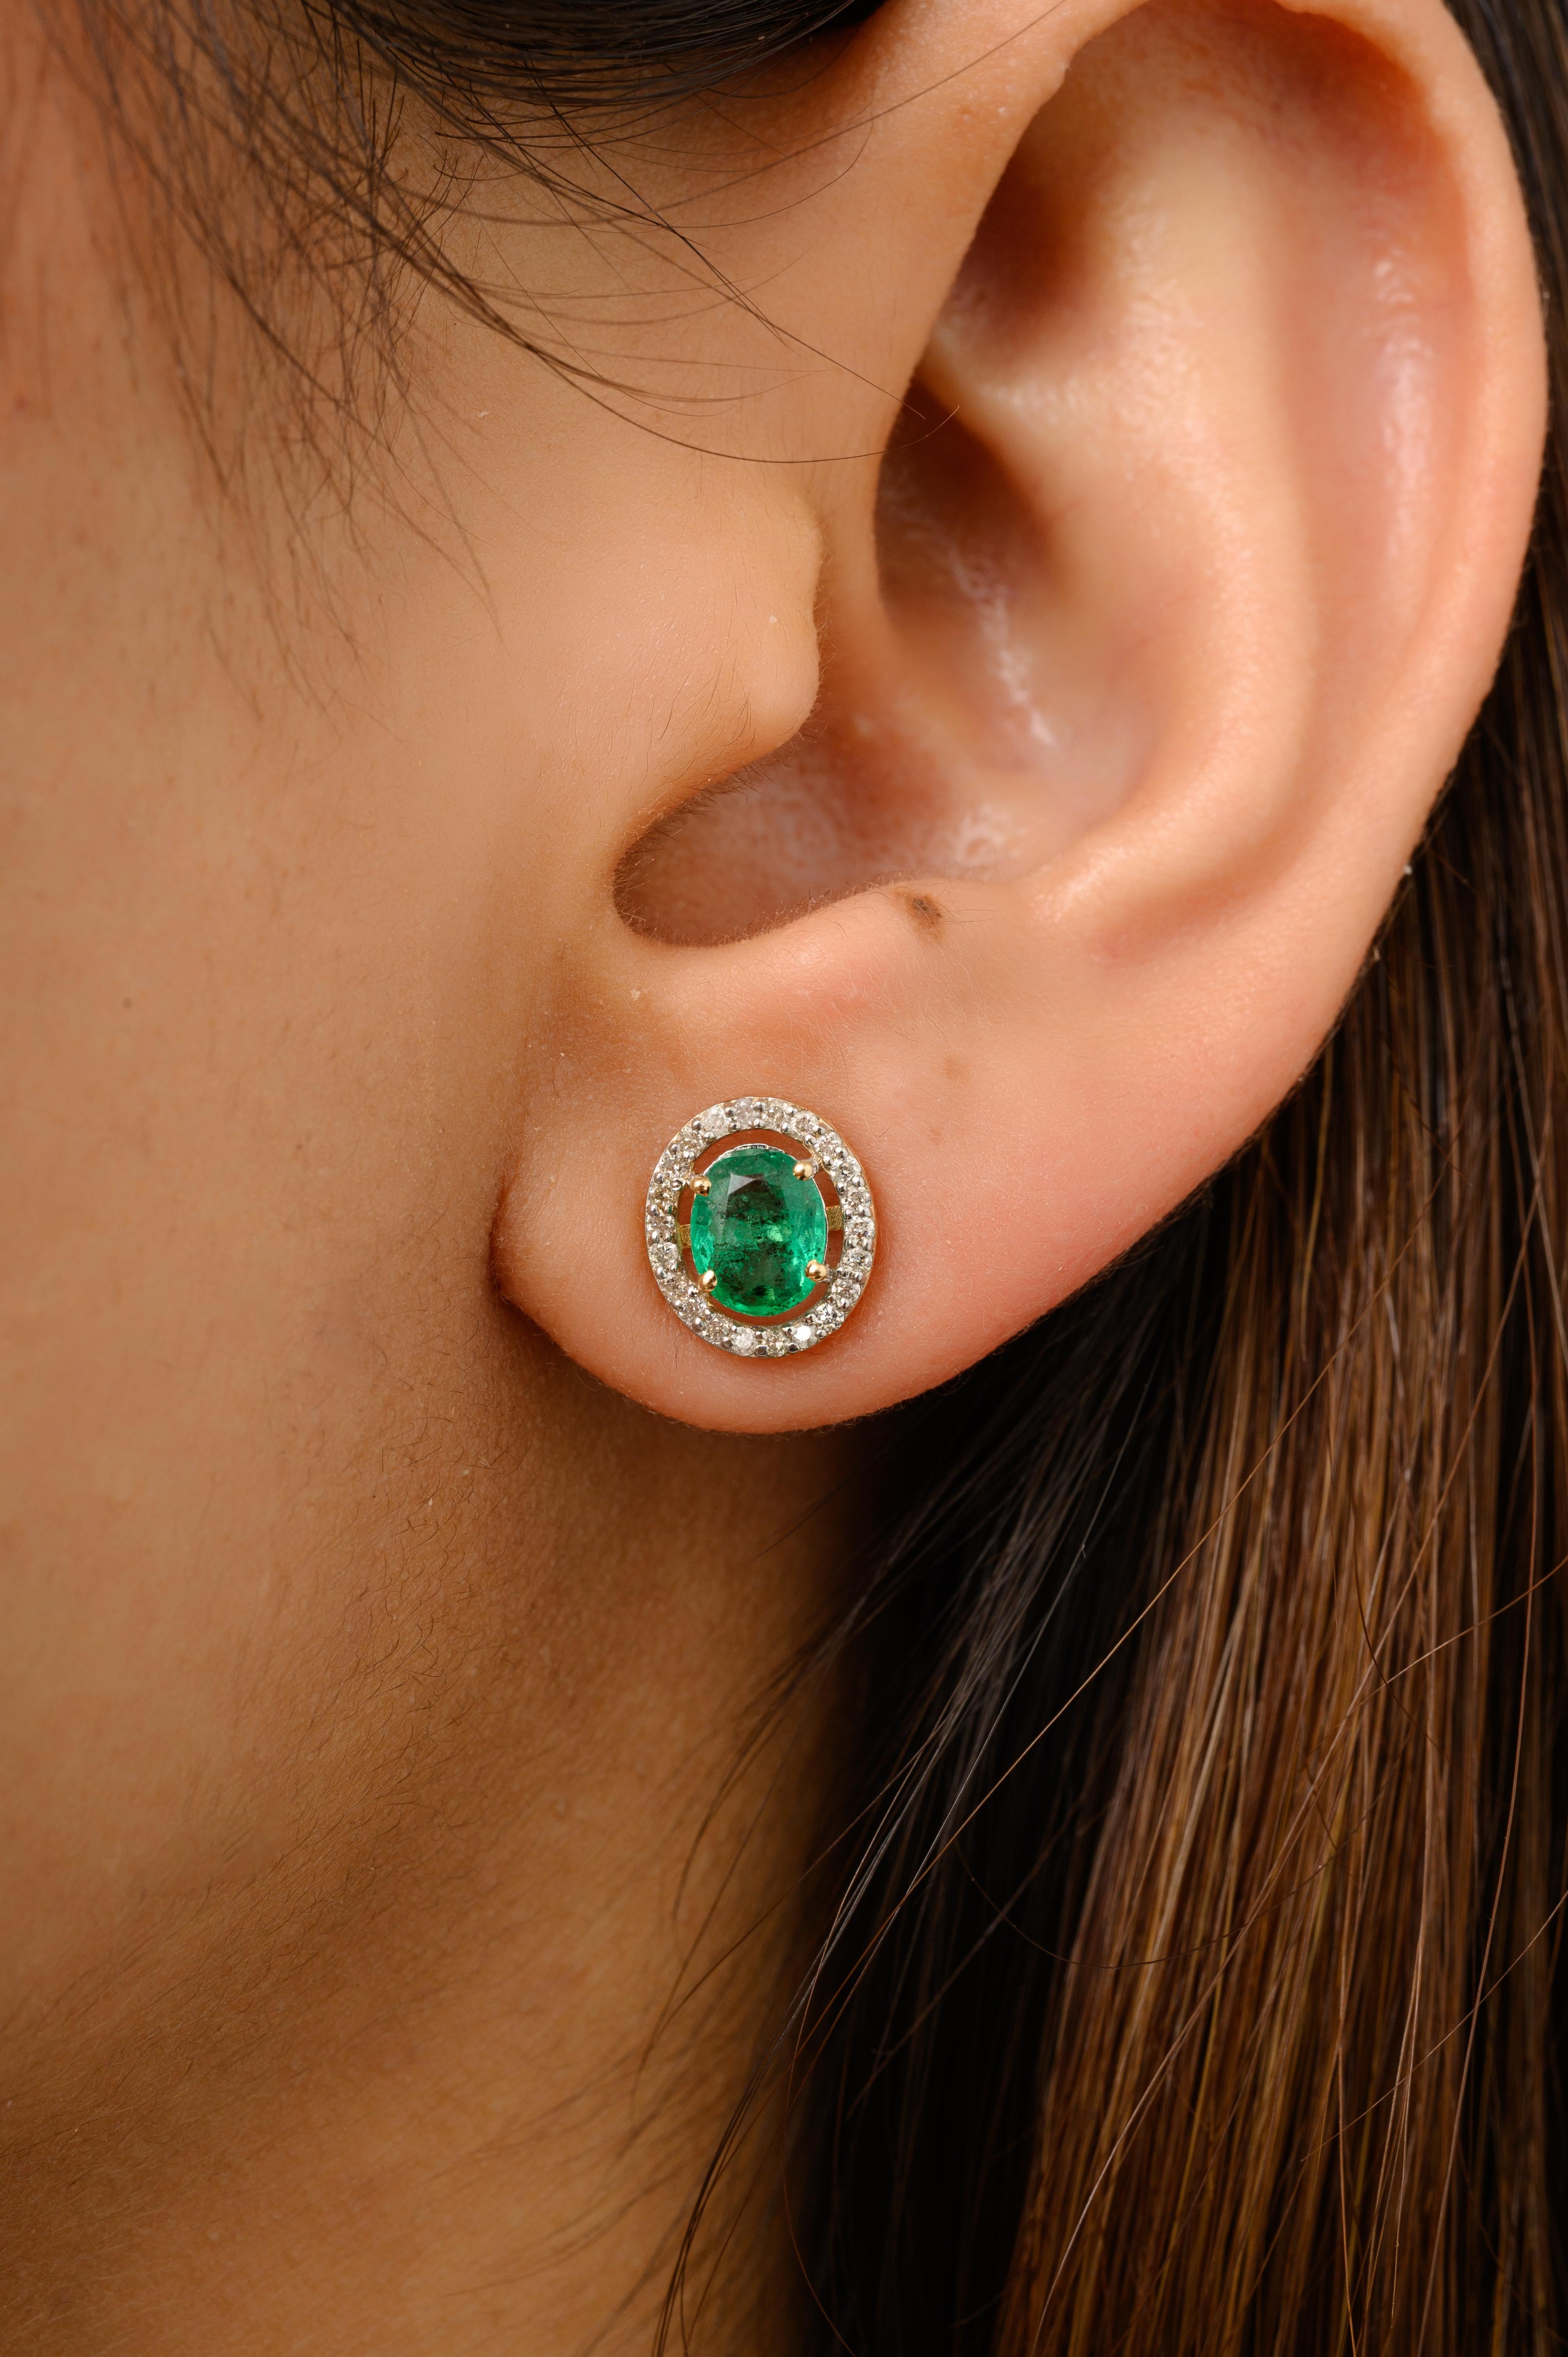 Echte Smaragd-Diamant-Halo-Ohrstecker aus 14-karätigem Gold, um Ihren Look zu unterstreichen. Sie brauchen Ohrstecker, um mit Ihrem Look ein Statement zu setzen. Diese Ohrringe mit Smaragd im Ovalschliff und Diamanten im Rundschliff sorgen für ein